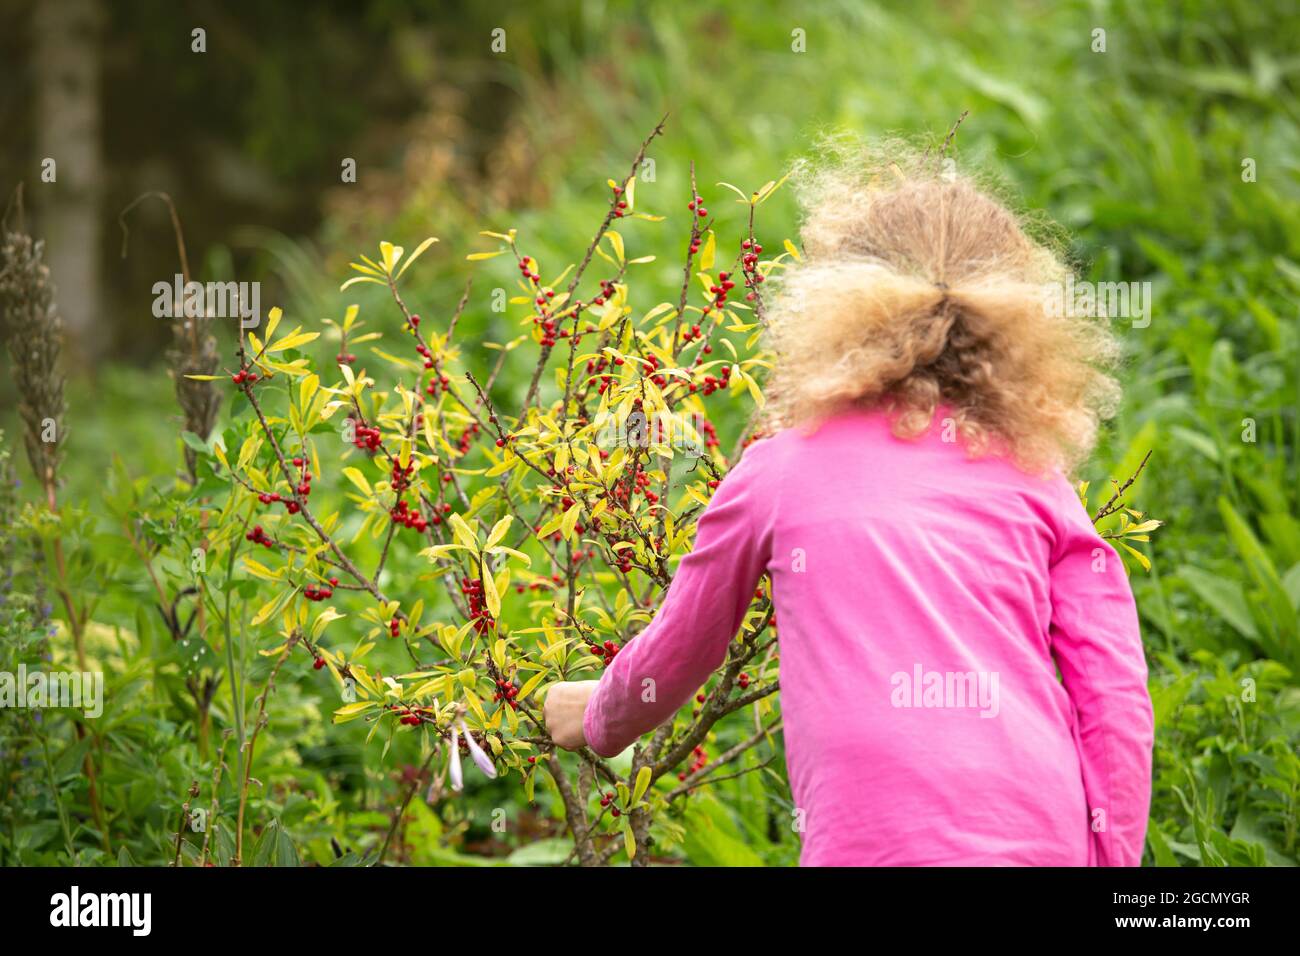 Niño joven de 4 años curioso recoger y comer daphne mezereum baya roja muy venenosa de arbusto. Concepto de peligro para la salud y envenenamiento. Foto de stock